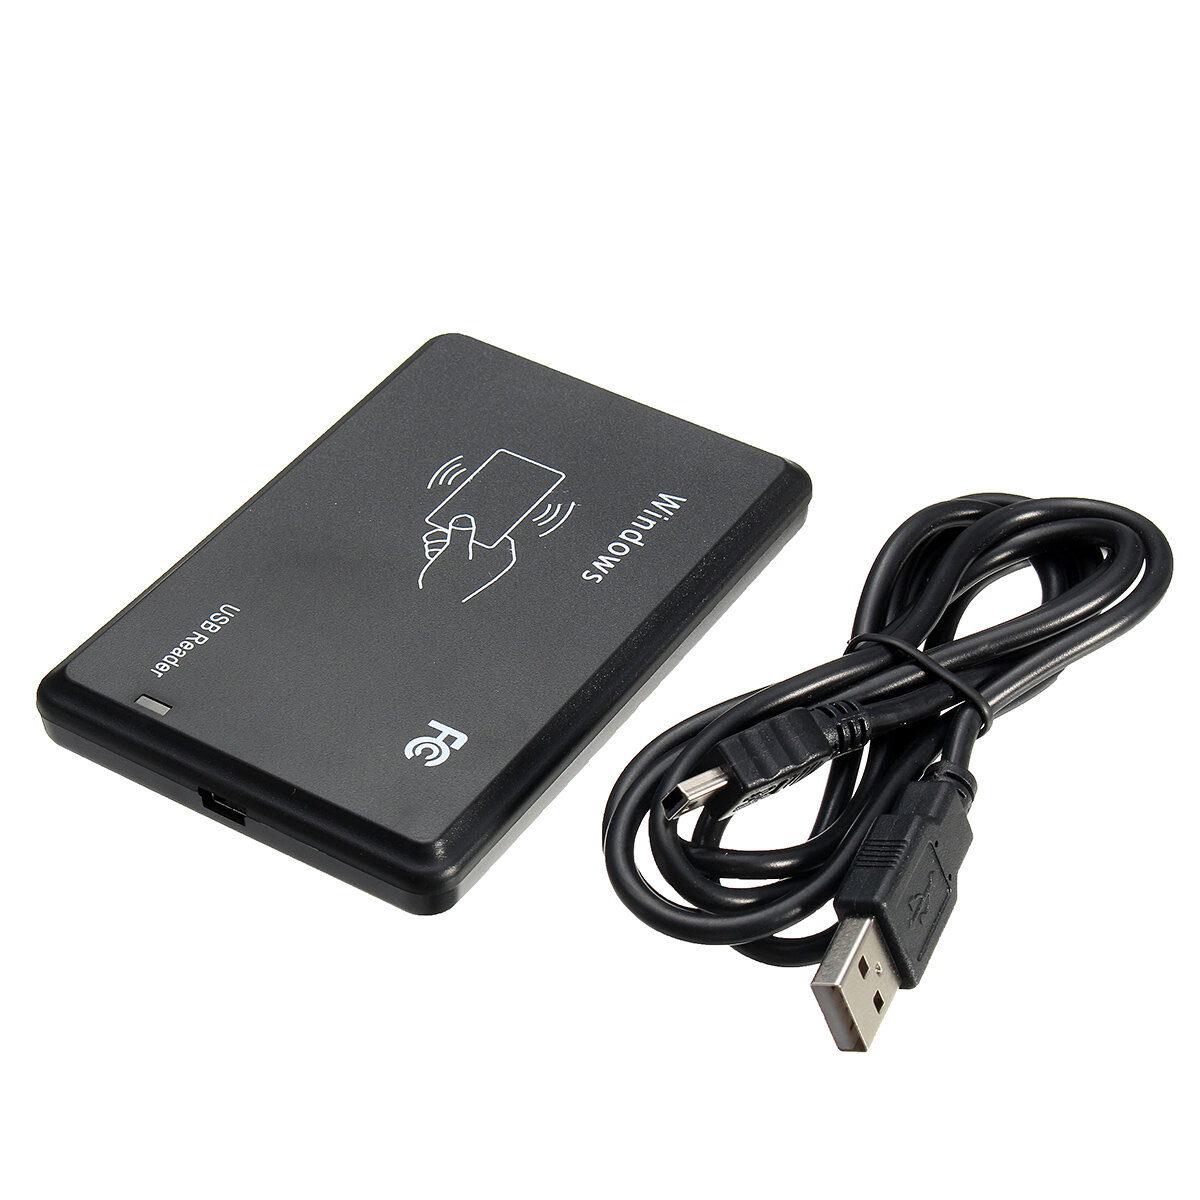 

RFID Читатель Бесконтактный считыватель карт памяти Mifare USB 13.56MHZ 14443A 106 Кбит / с